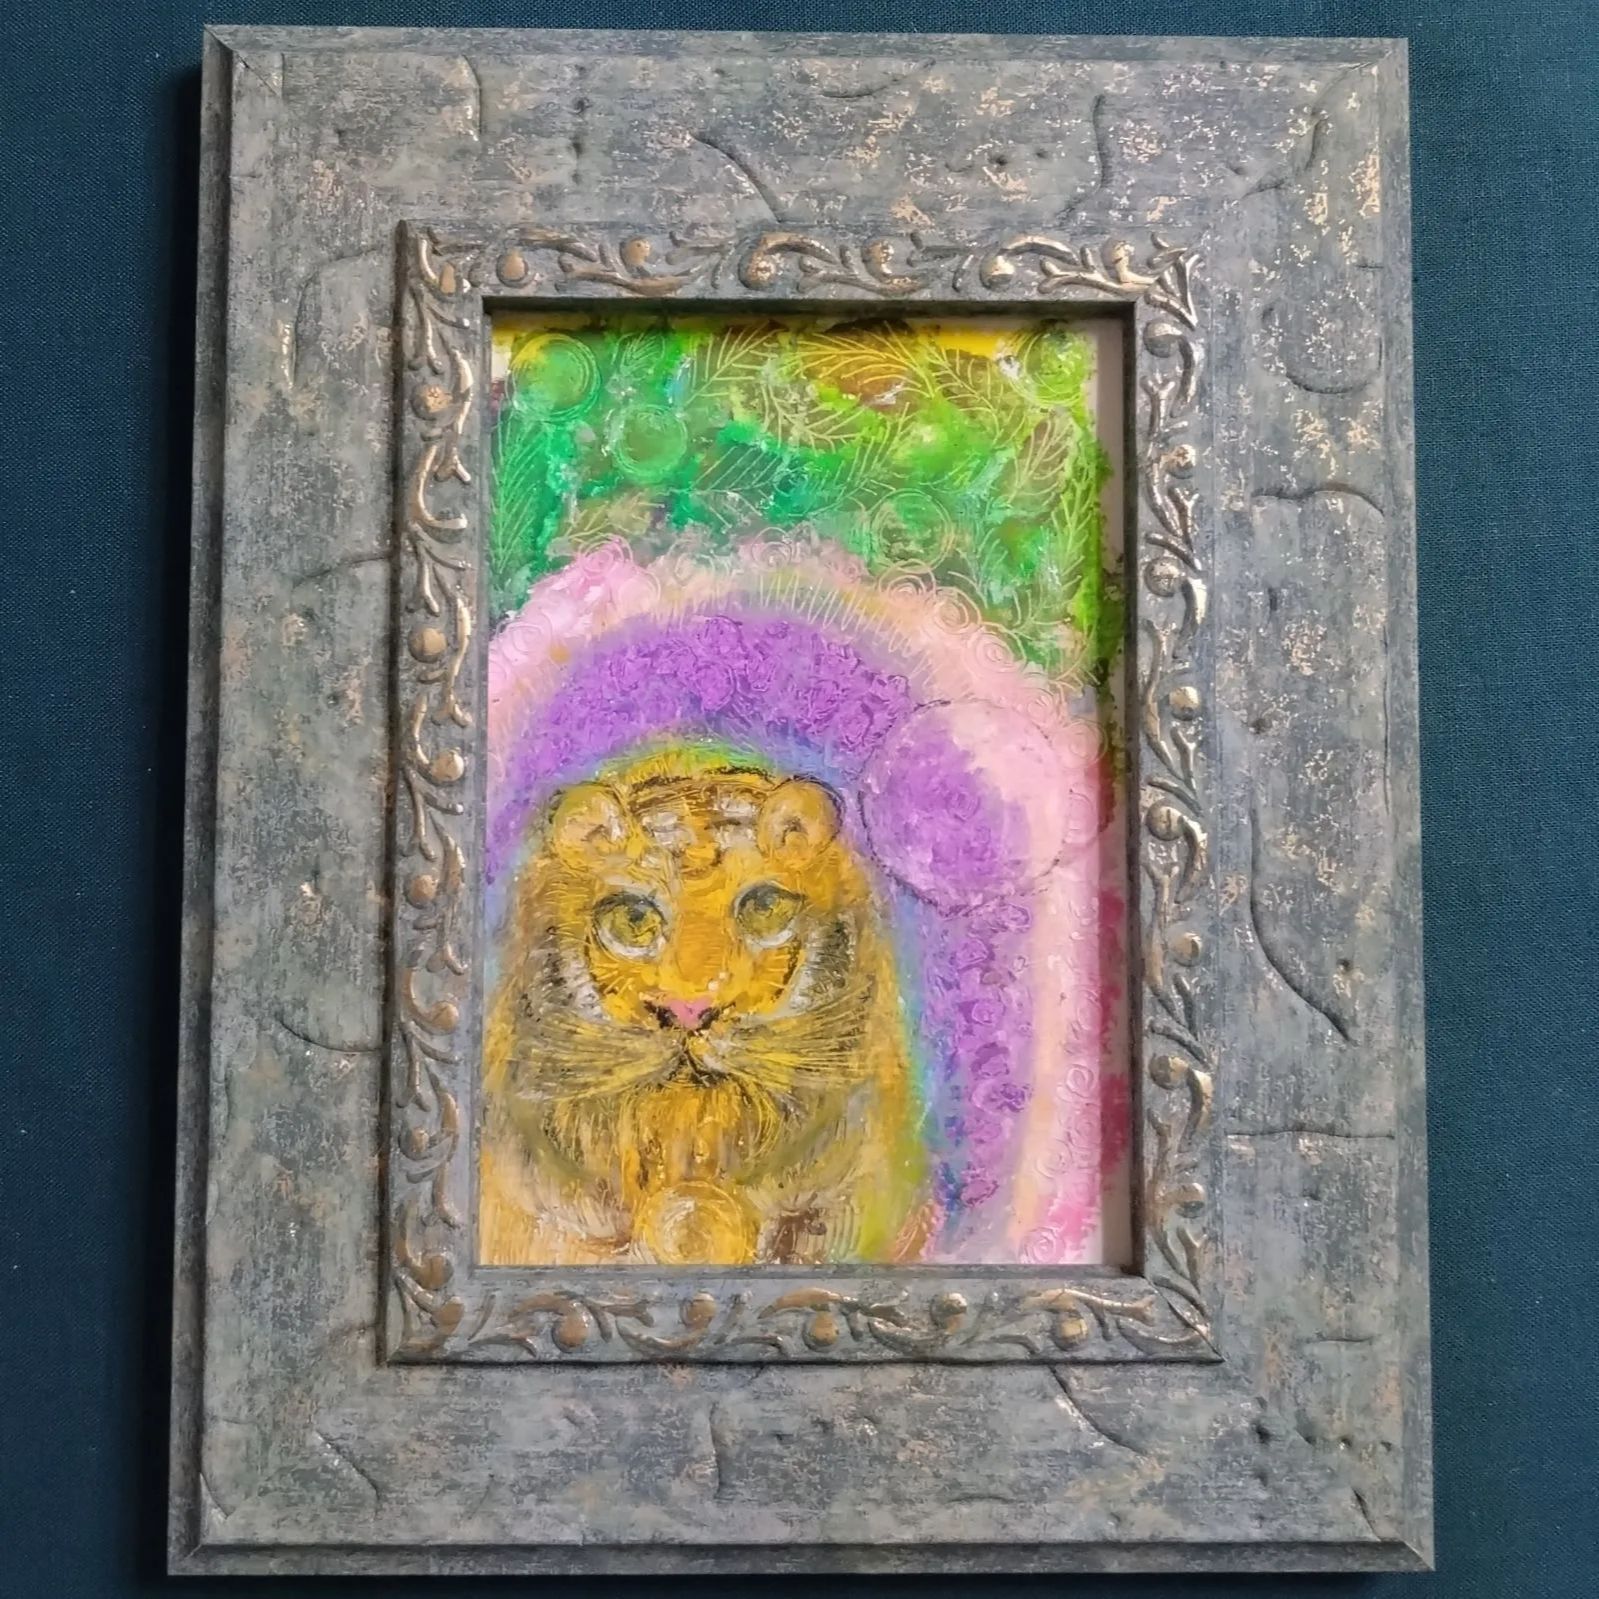 オイルパステル画 題名「tiger in a dream」オイルパステル 原画 絵画 クレヨン クレヨン画 - メルカリ